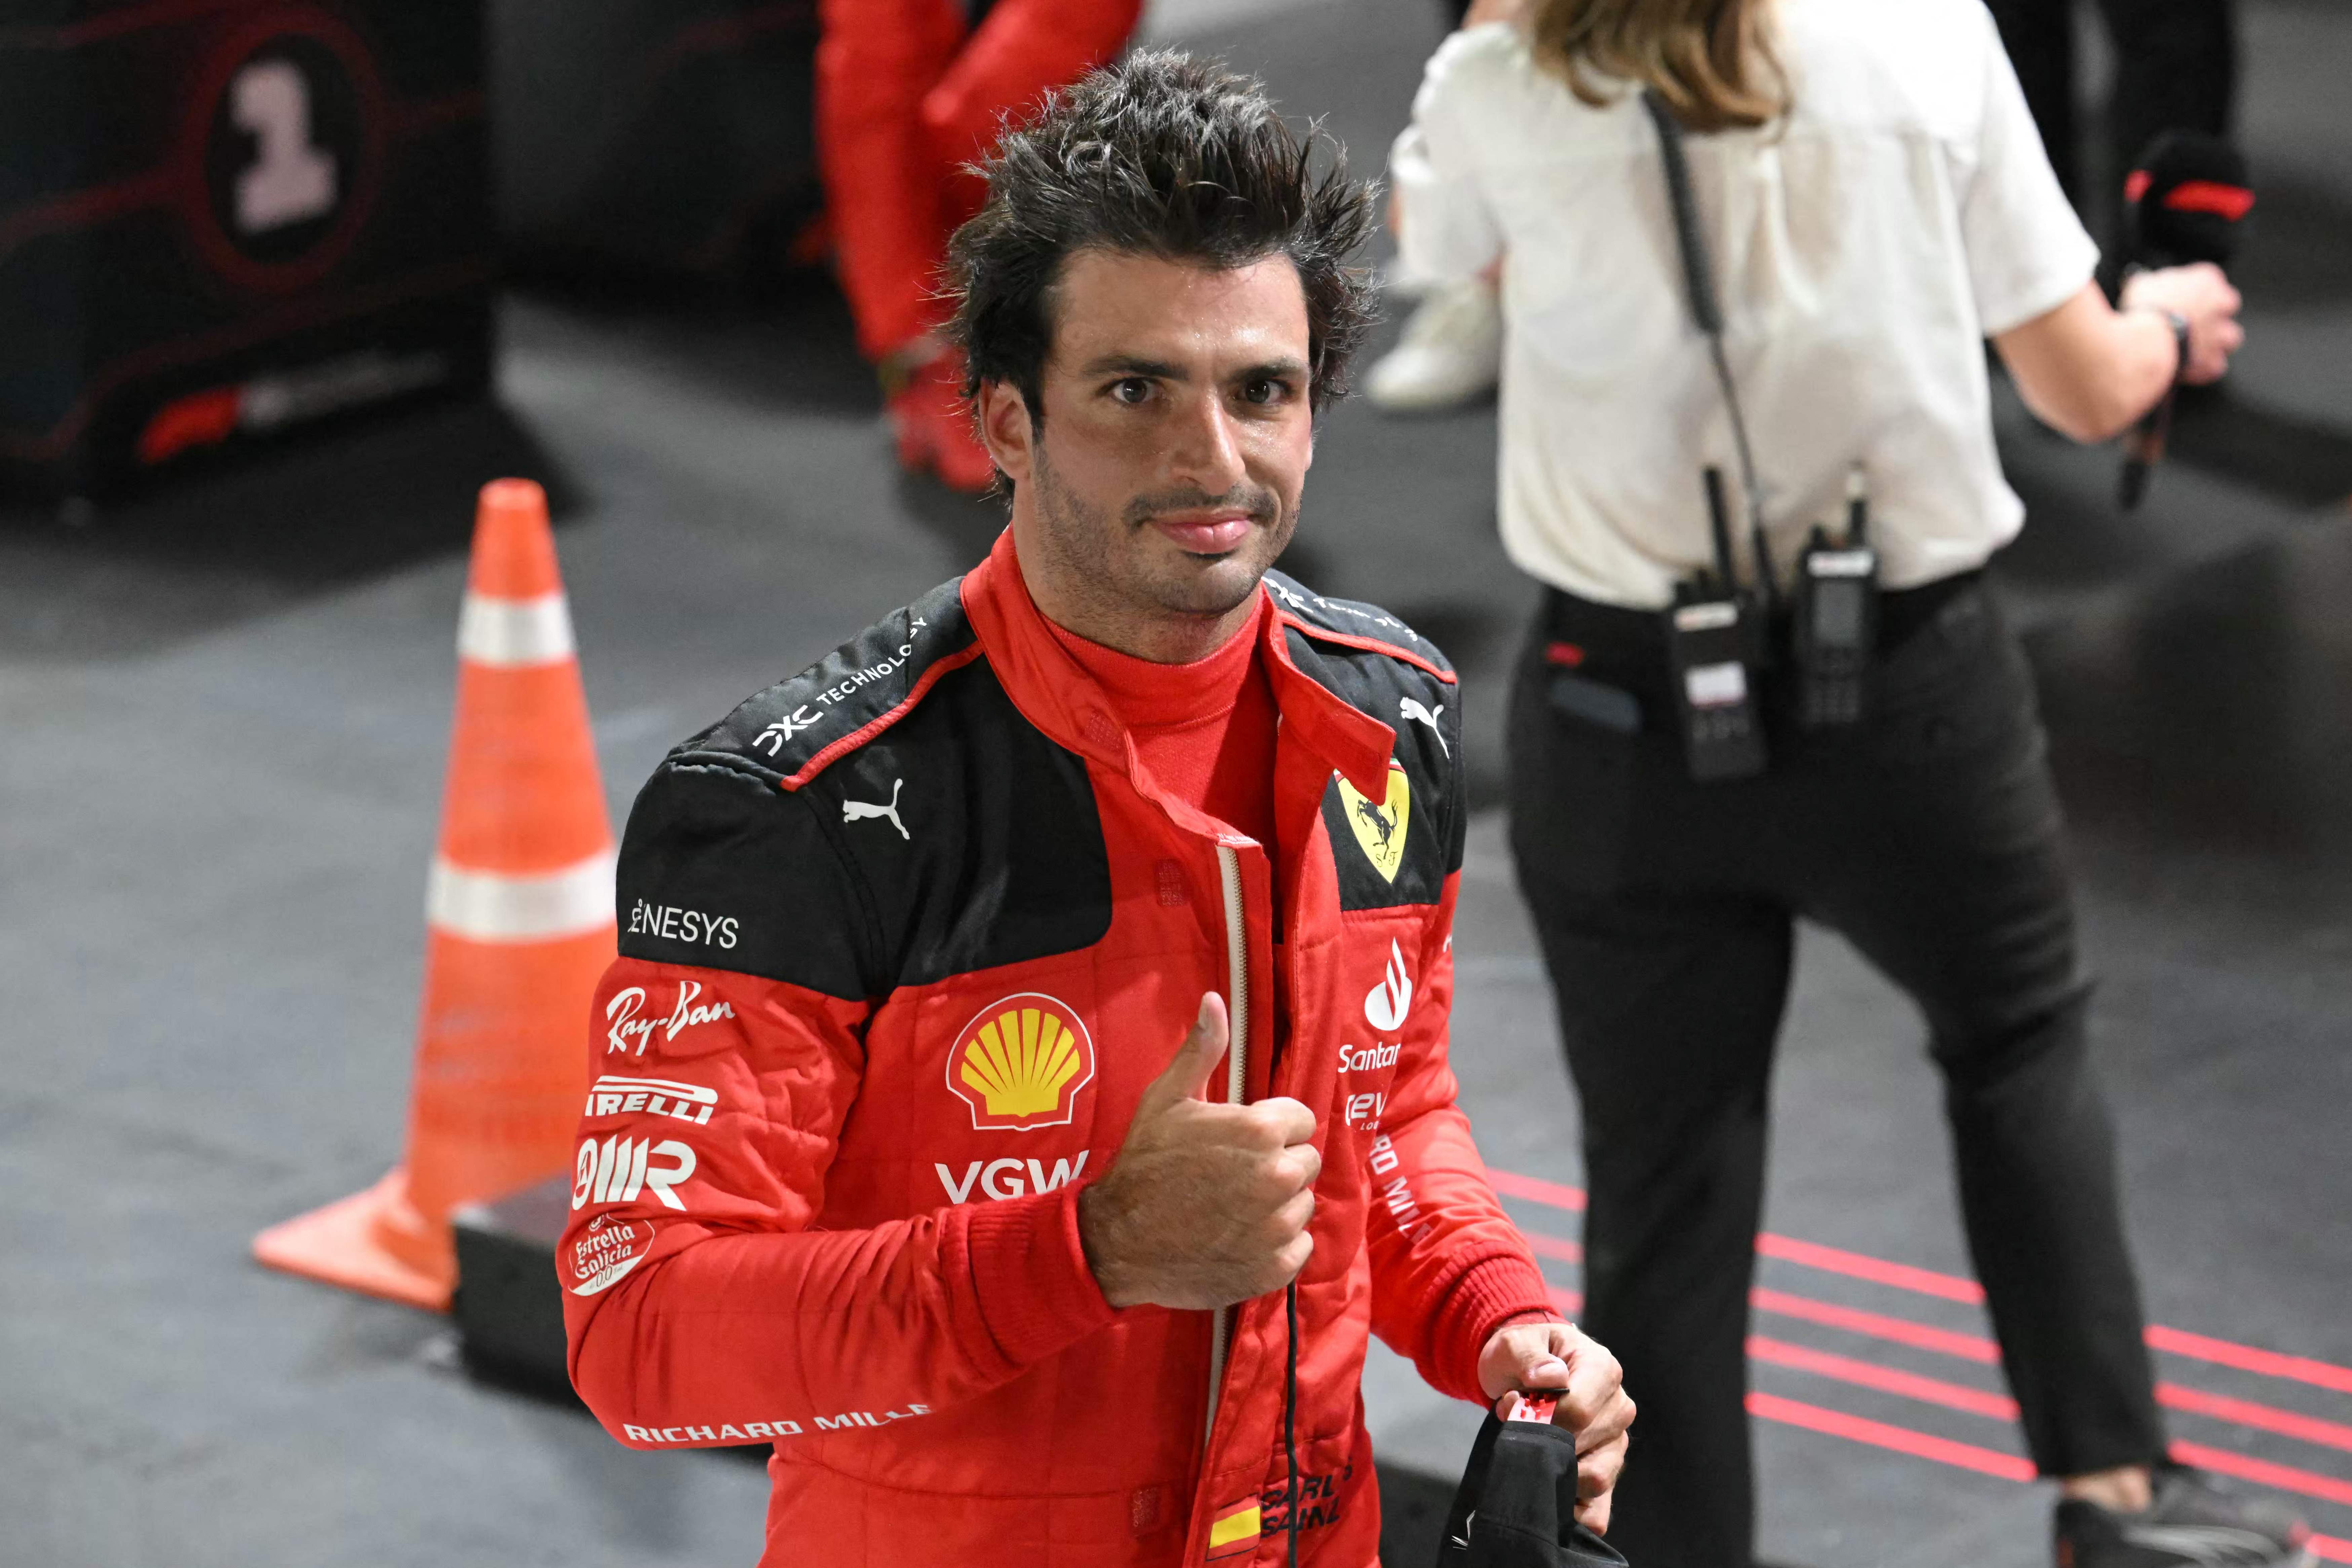 El piloto español de Ferrari, Carlos Sainz Jr, levanta su pulgar tras la carrera de calificación del Singapore Formula One Grand Prix, en Singapur. (Foto Prensa Libre: AFP)